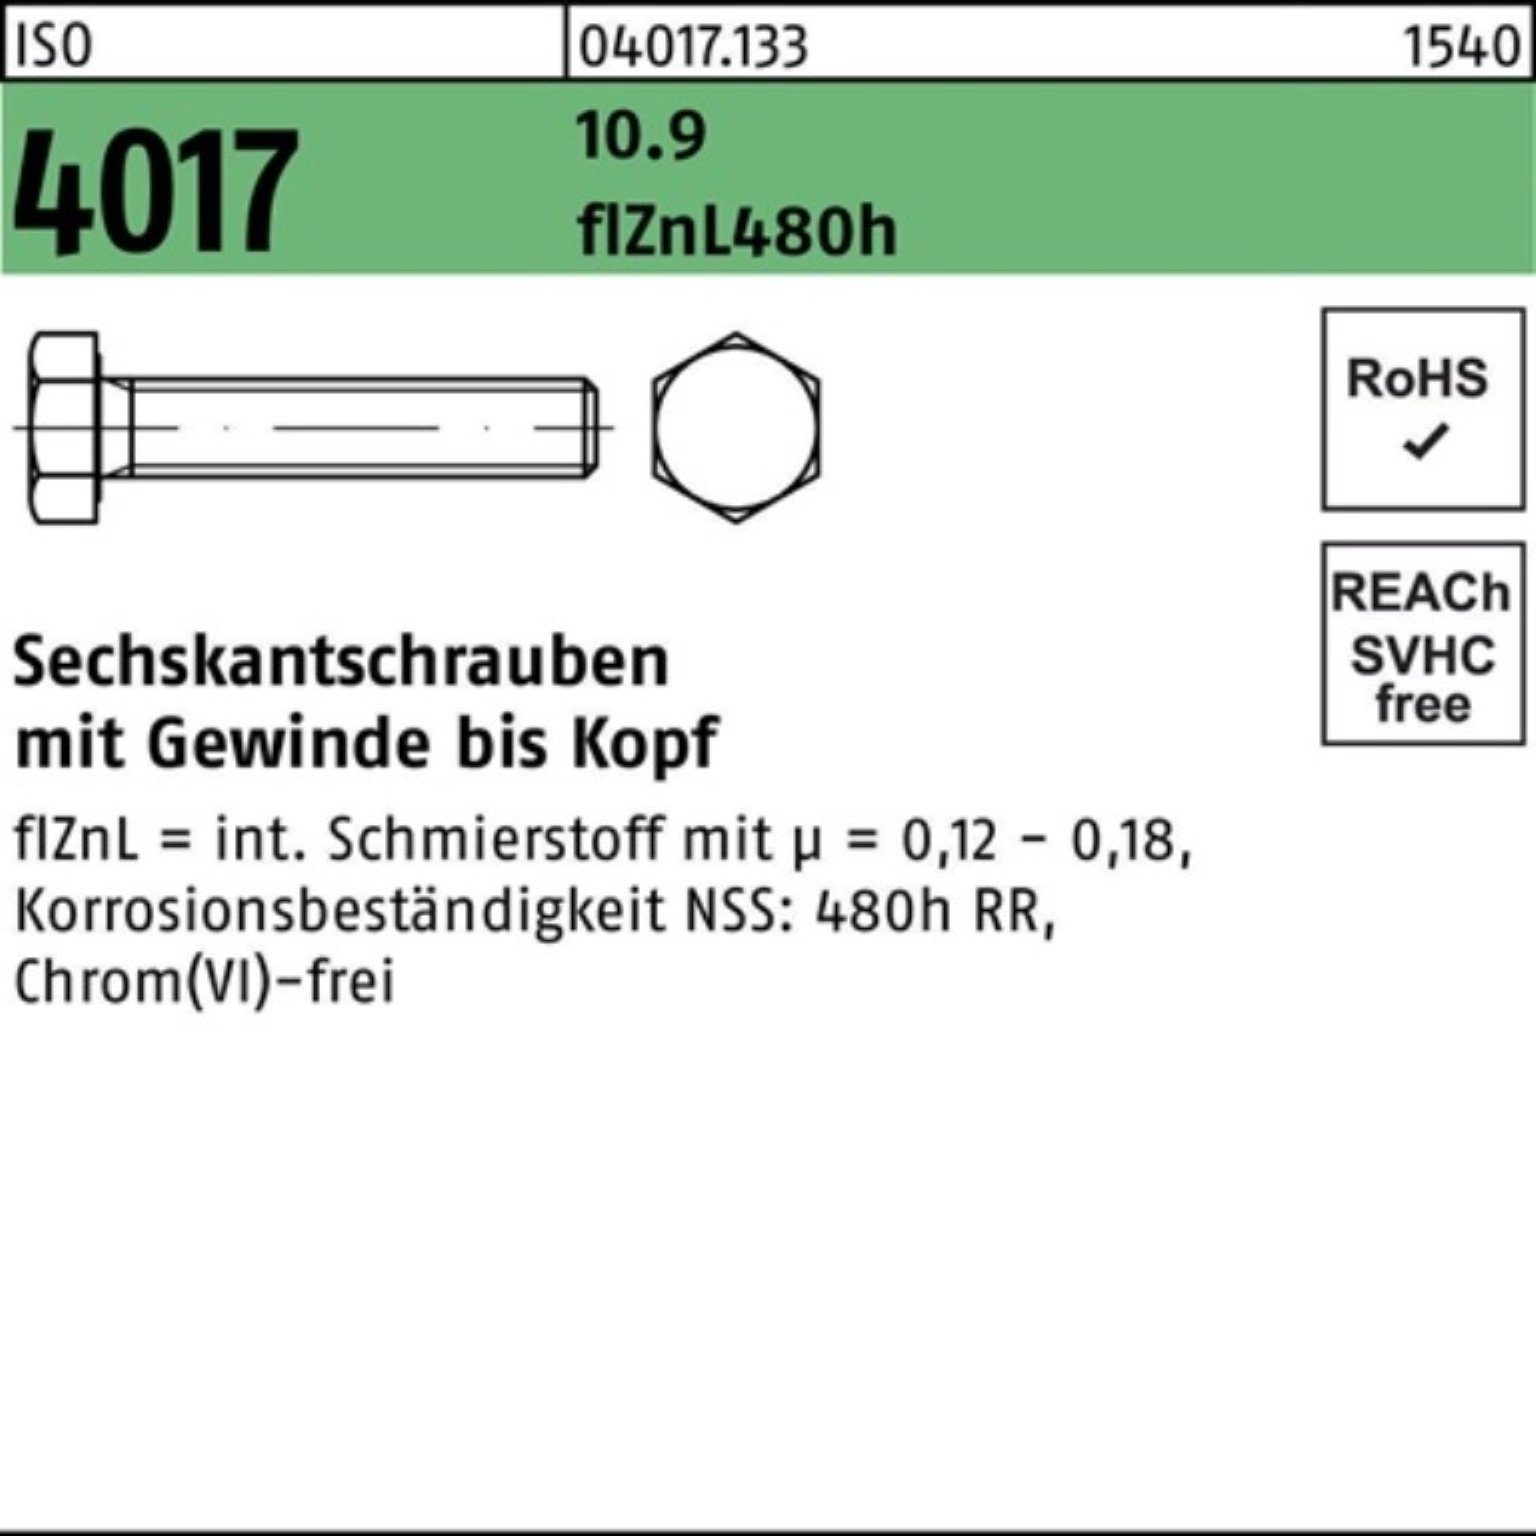 Bufab Sechskantschraube M10x 4017 Sechskantschraube Pack 100er VG 1 ISO zinklamellenb. 35 10.9